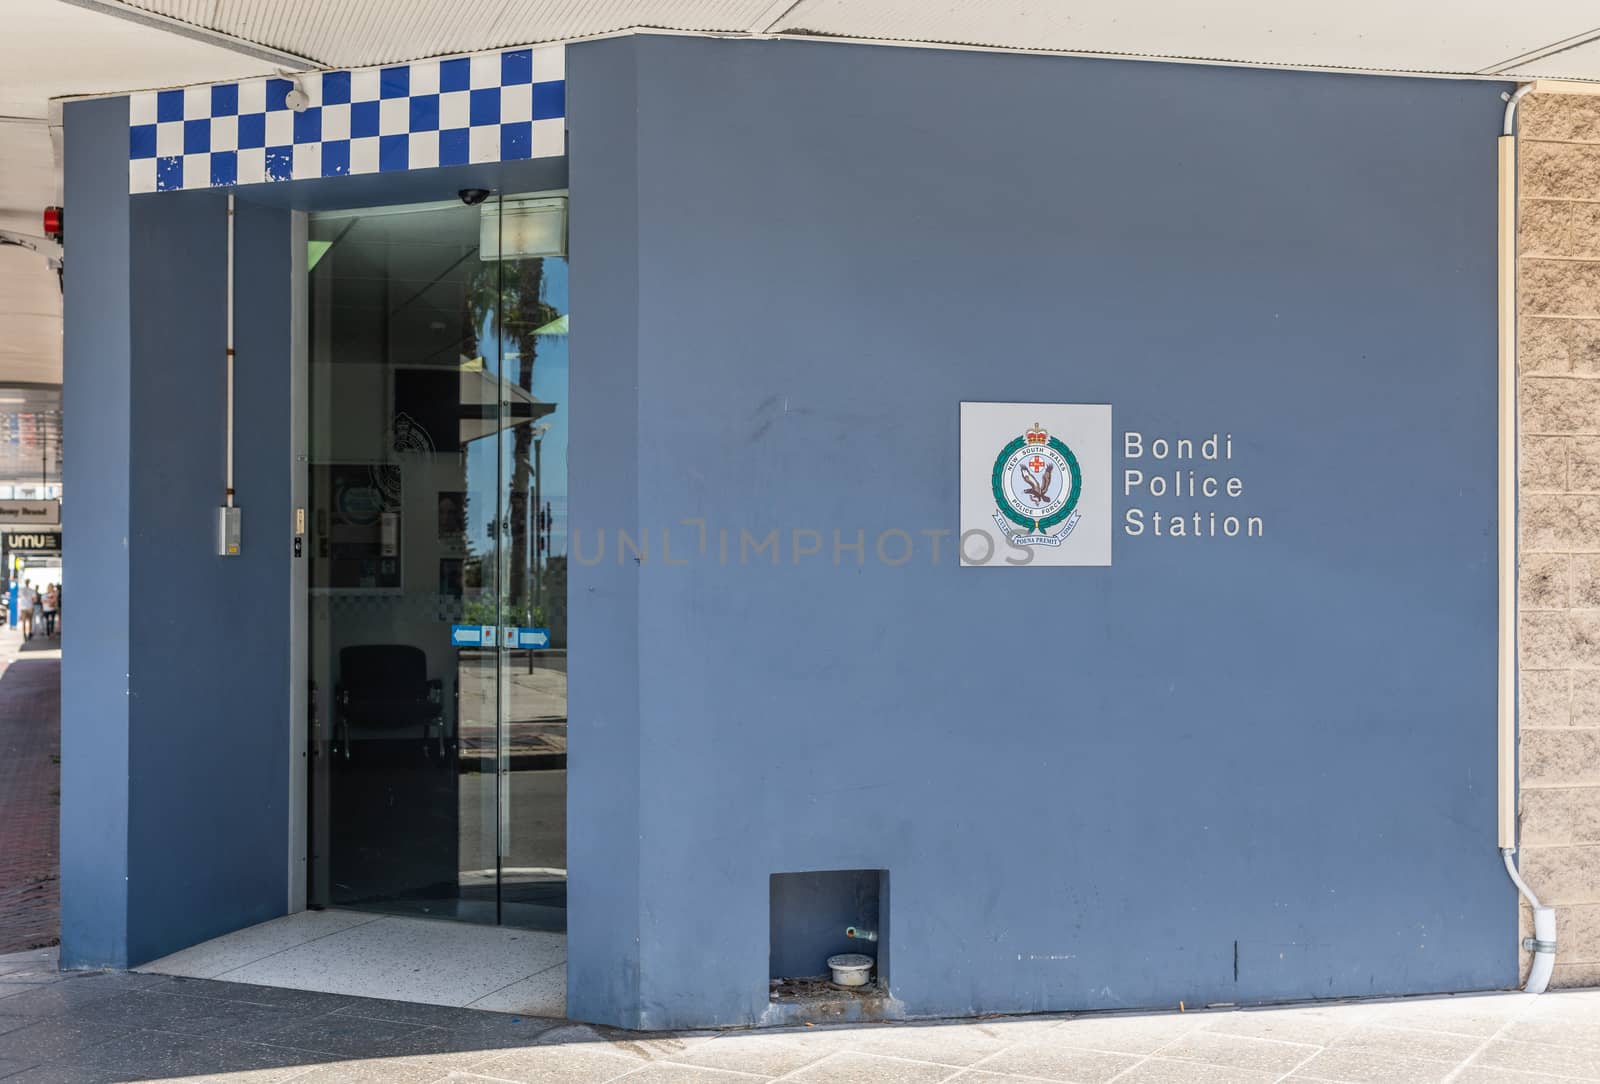 Police Station of Bondi beach, Sydney Australia. by Claudine